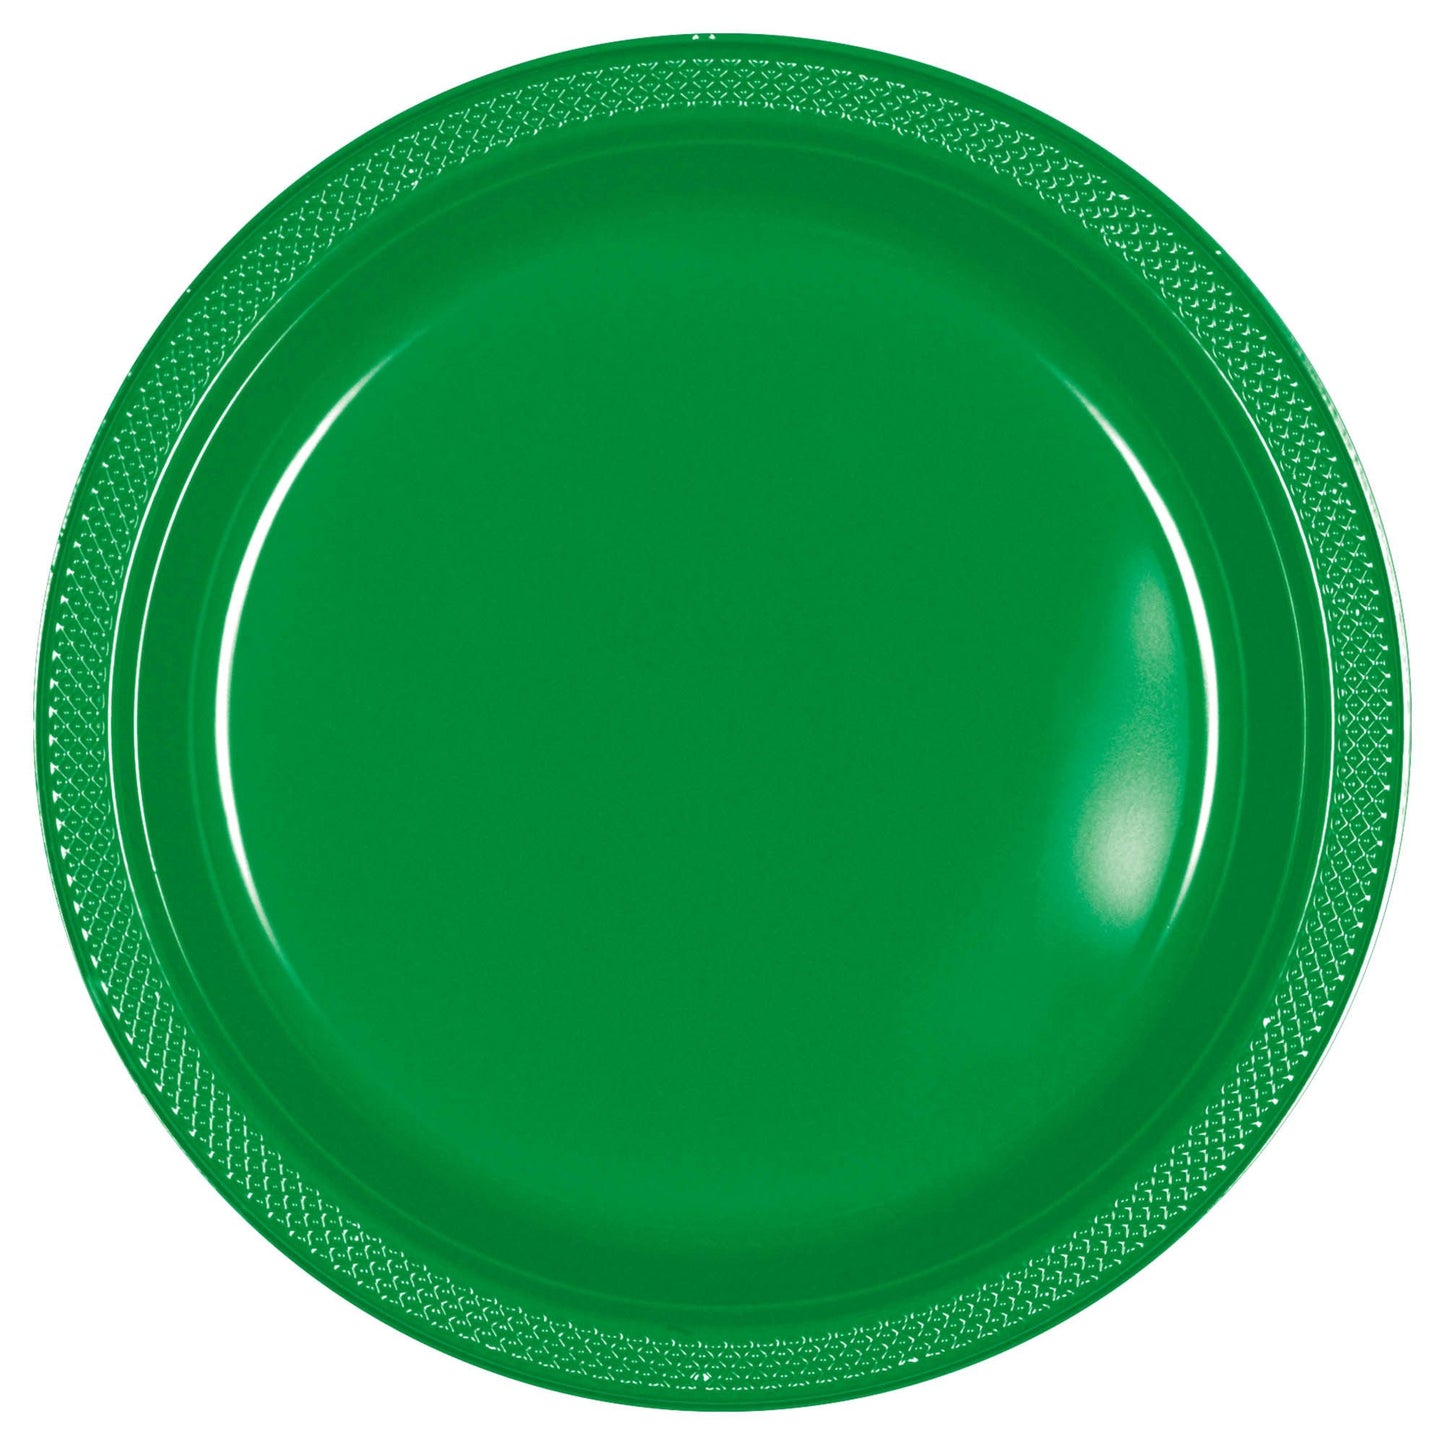 10" Plastic Plates (20ct.):